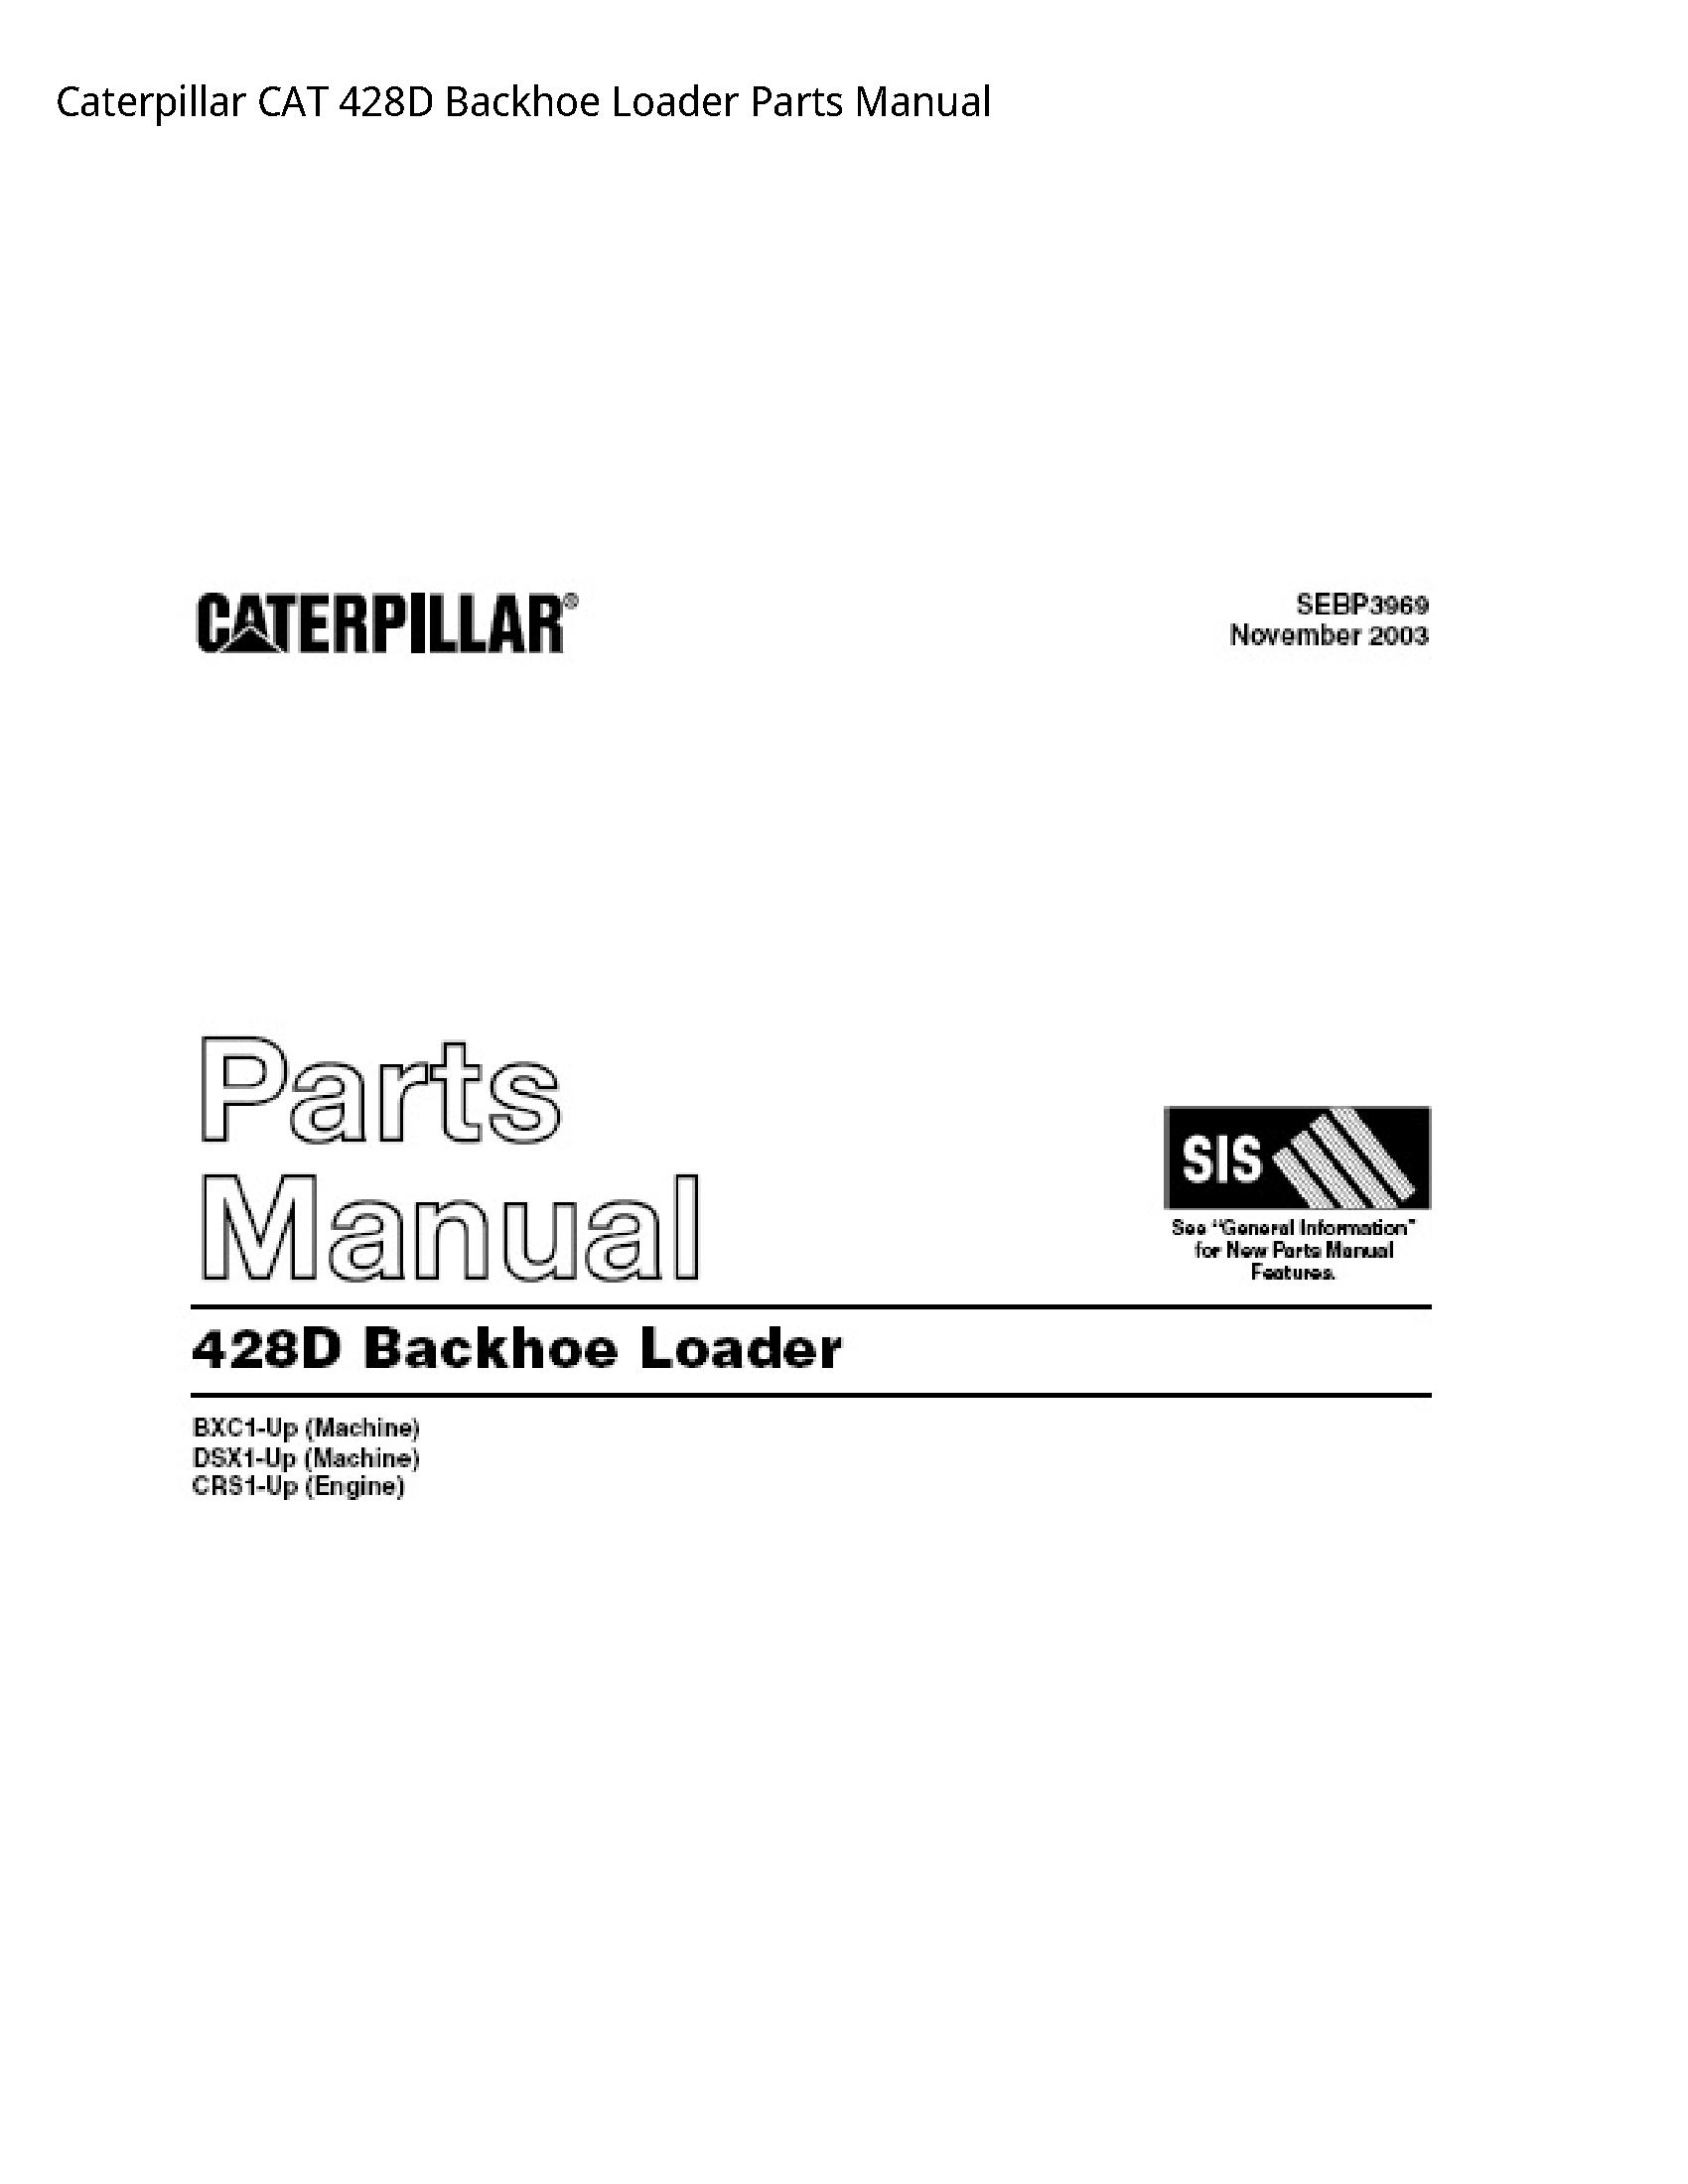 Caterpillar 428D CAT Backhoe Loader Parts manual